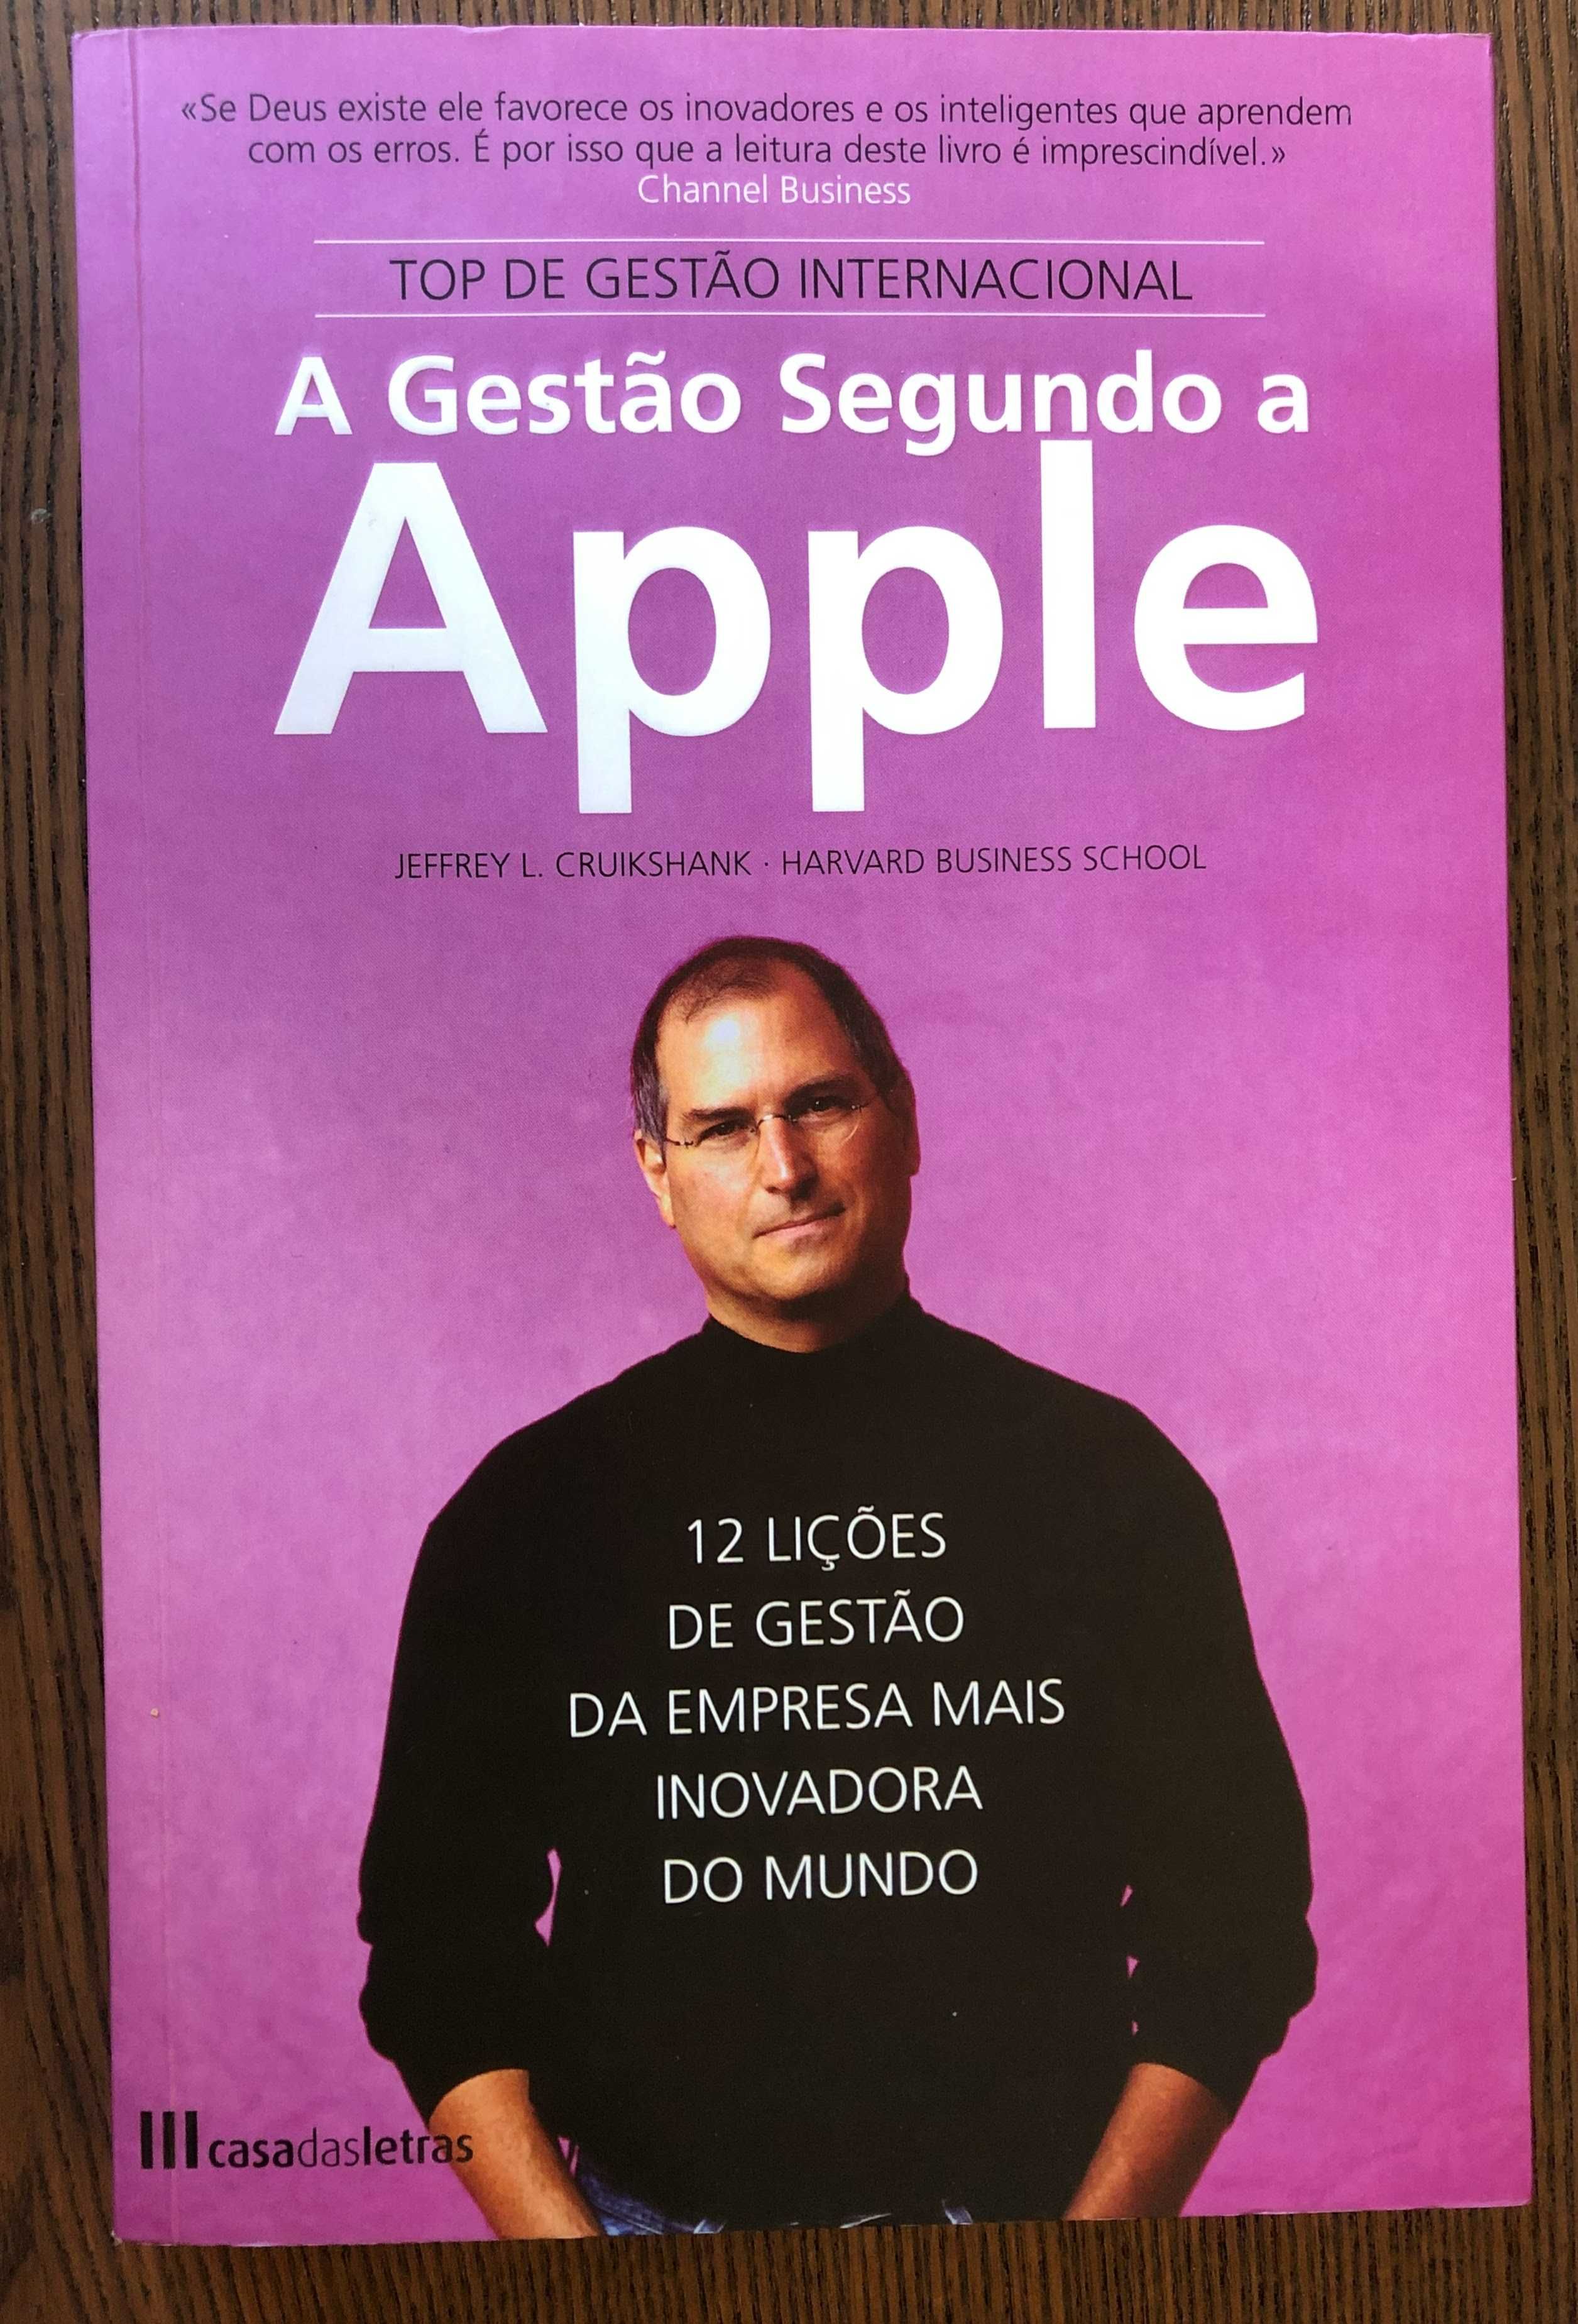 A Gestão segundo a Apple de Jeffrey L.Cruikshank